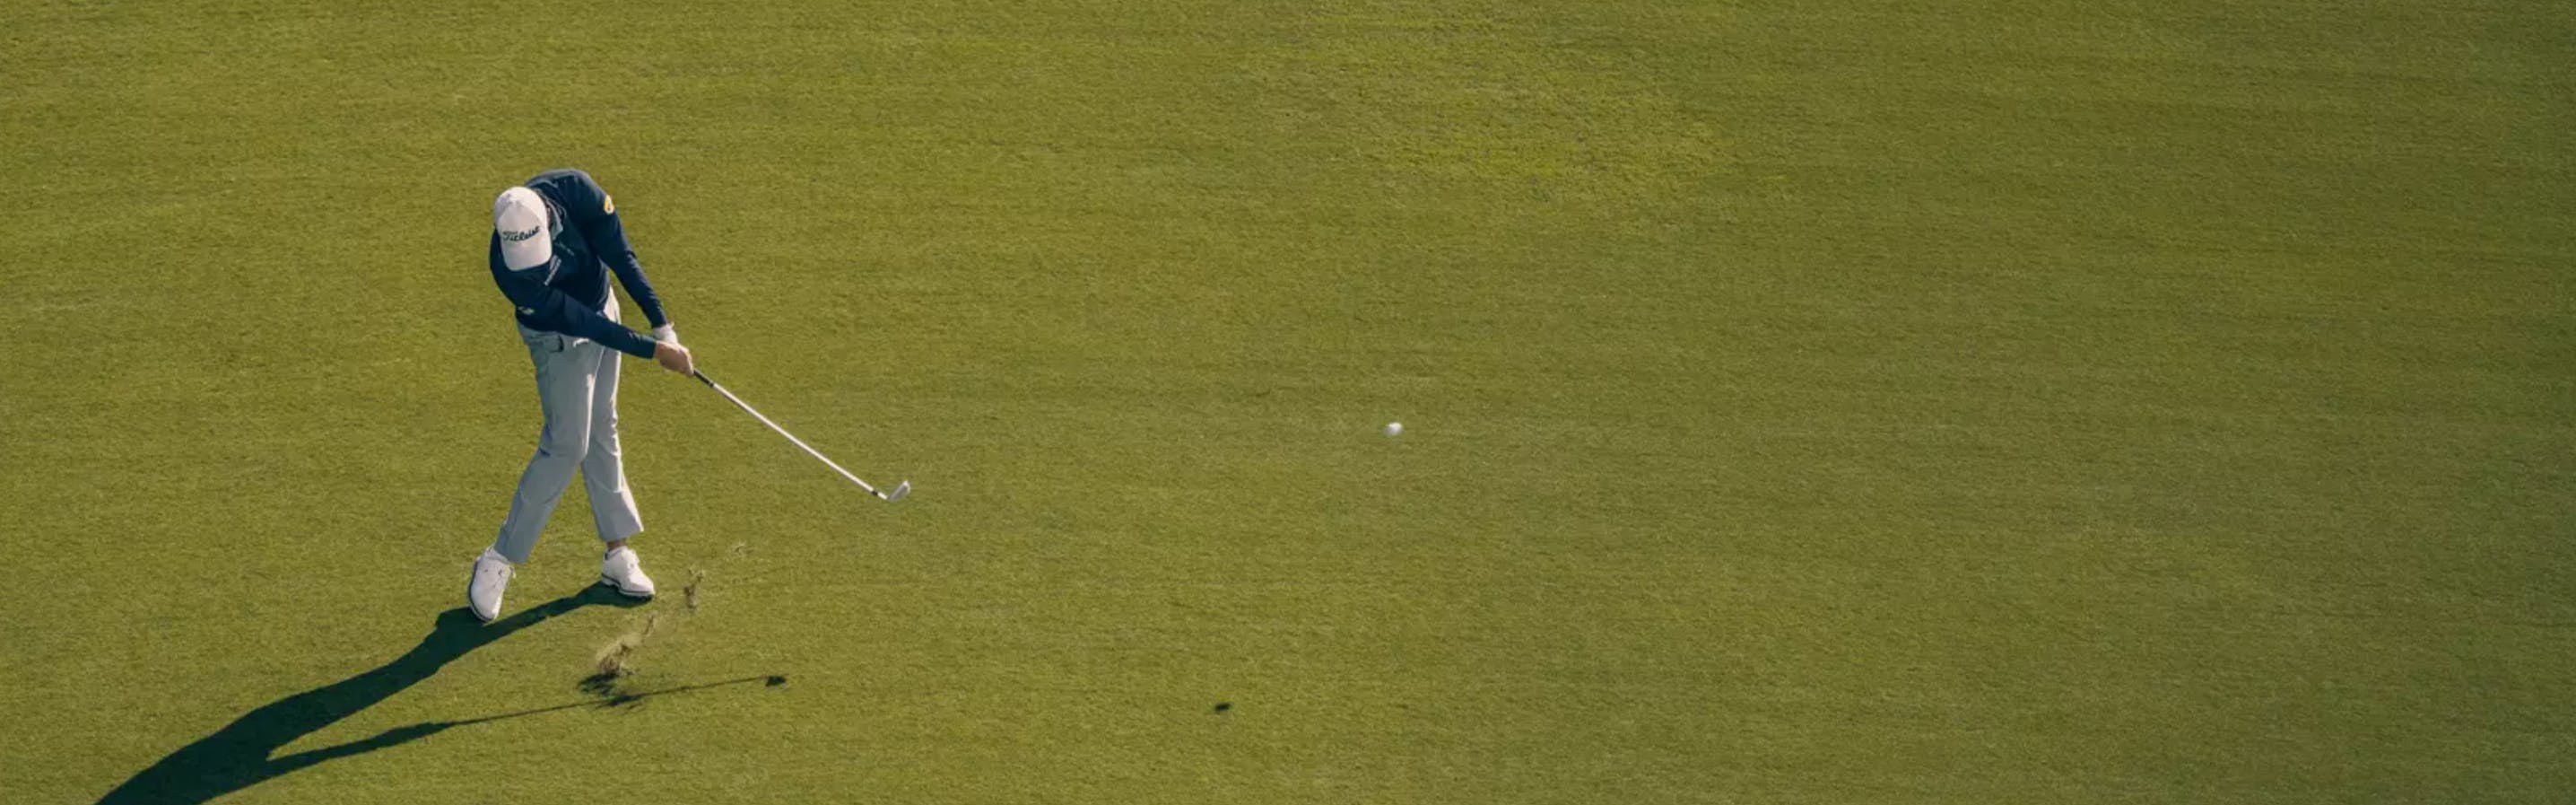 A golfer hitting a golf ball with a club. 